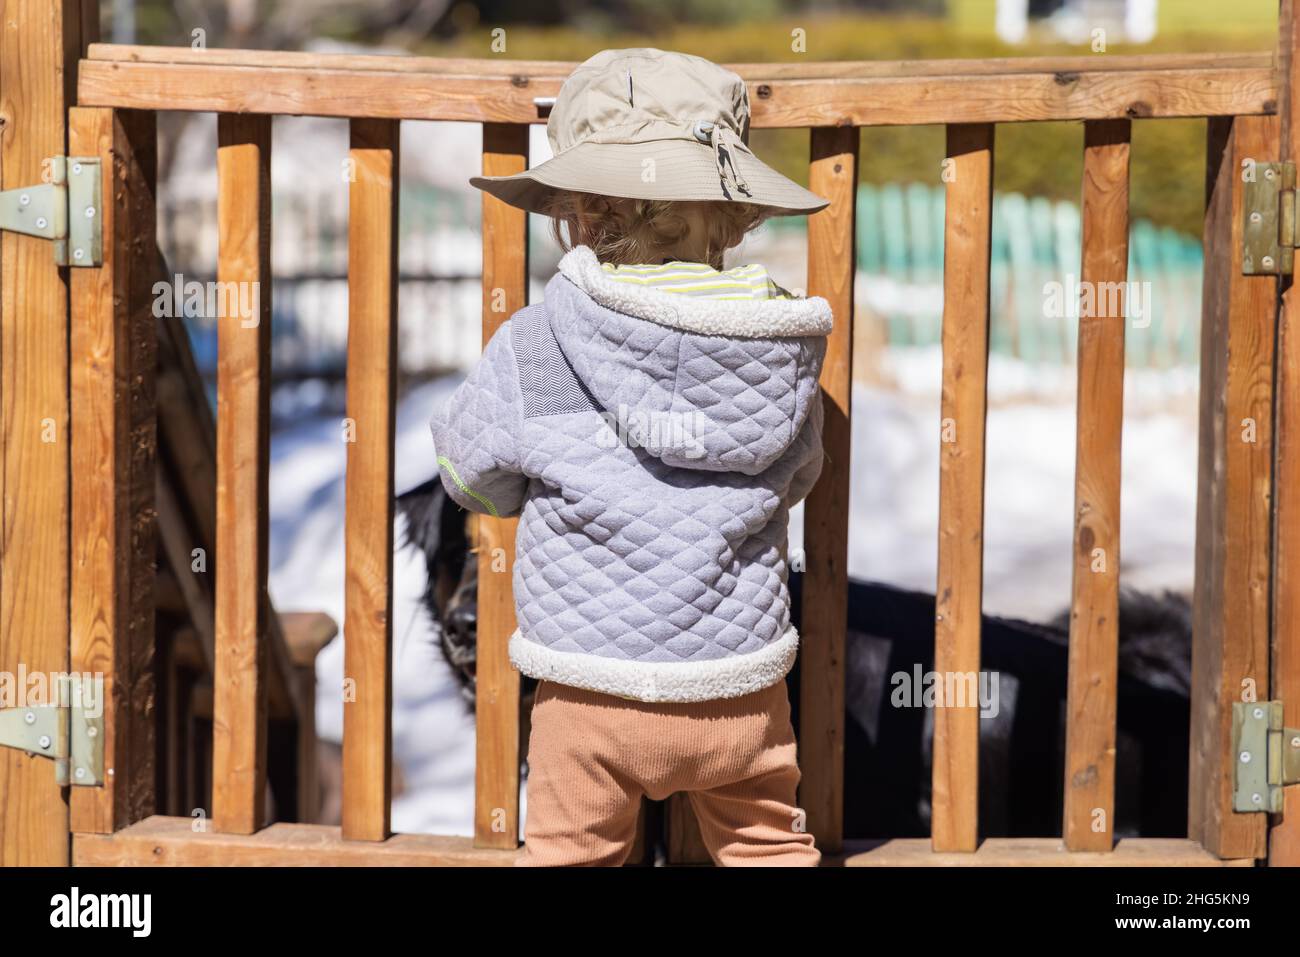 Ein kleiner Junge, der an einem kalten, sonnigen Tag einen Baumwollhut trägt, wird von hinten gesehen und steht an einem Holztor in einem Hinterhof mit Kopieplatz zu beiden Seiten. Stockfoto